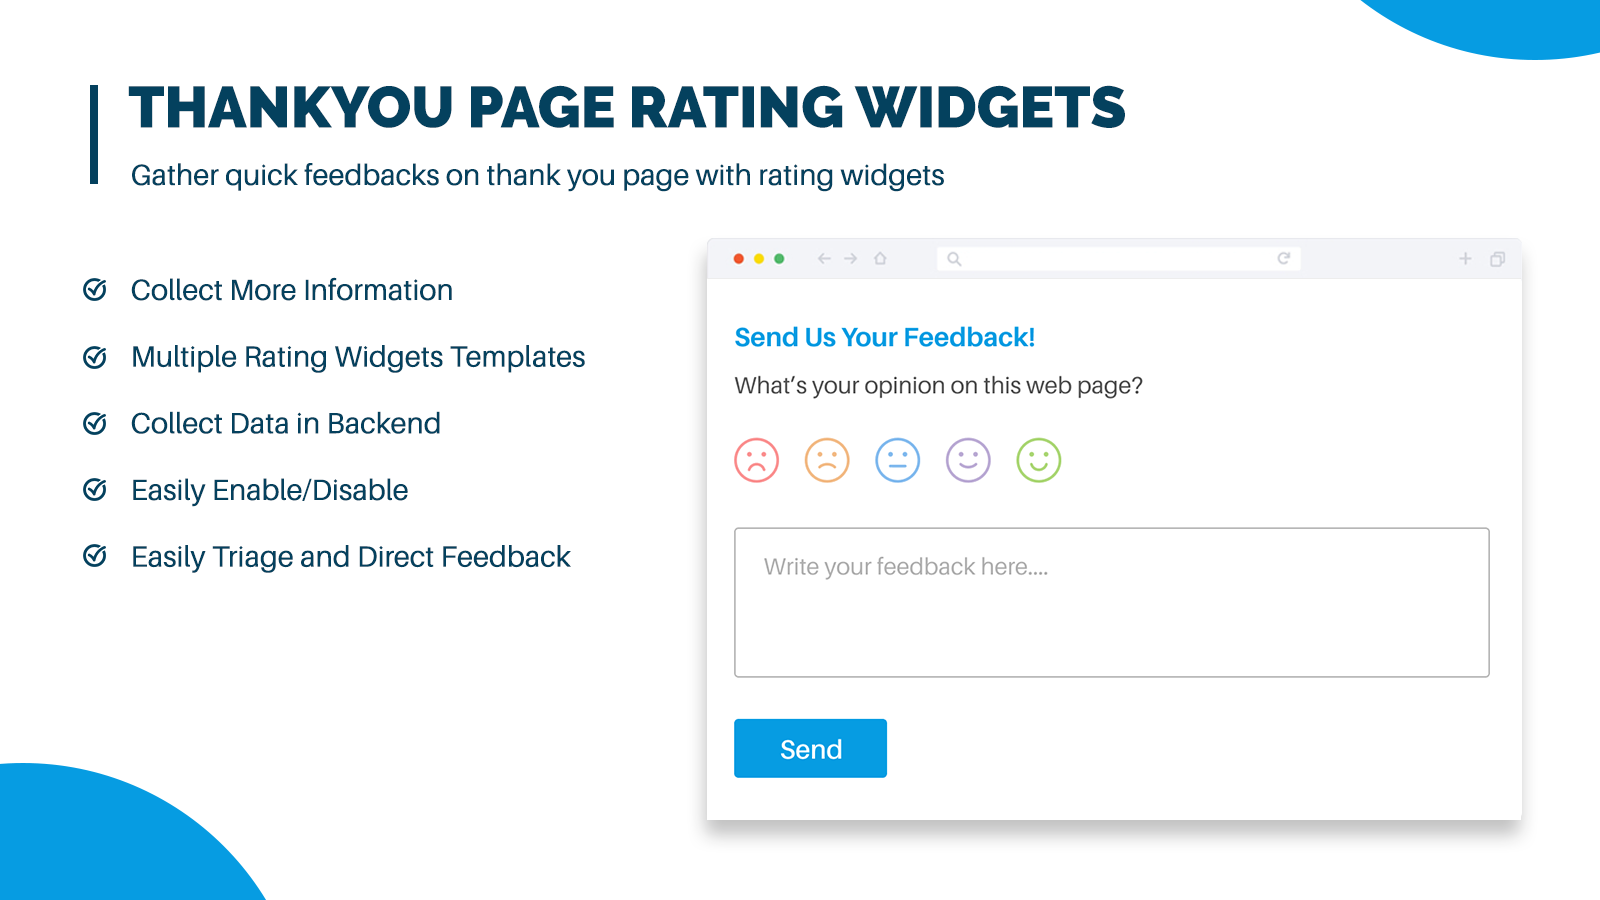 exibir widgets de avaliação e feedback na página de agradecimento